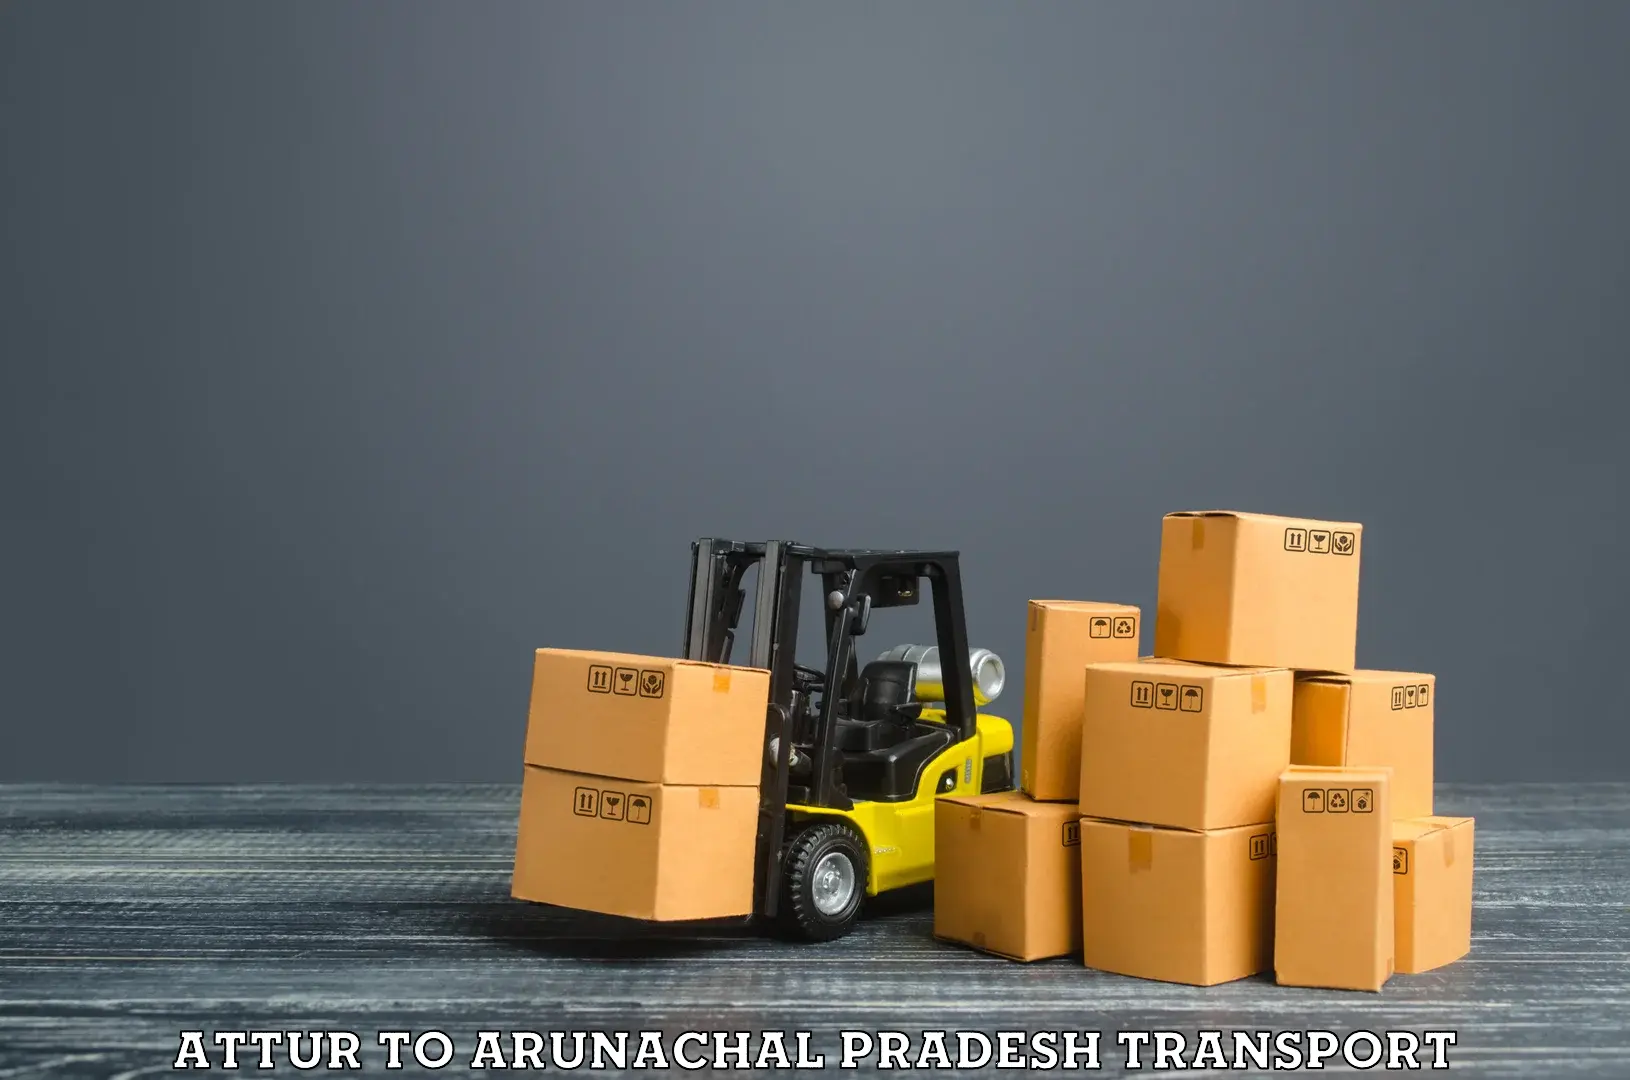 Furniture transport service Attur to Arunachal Pradesh